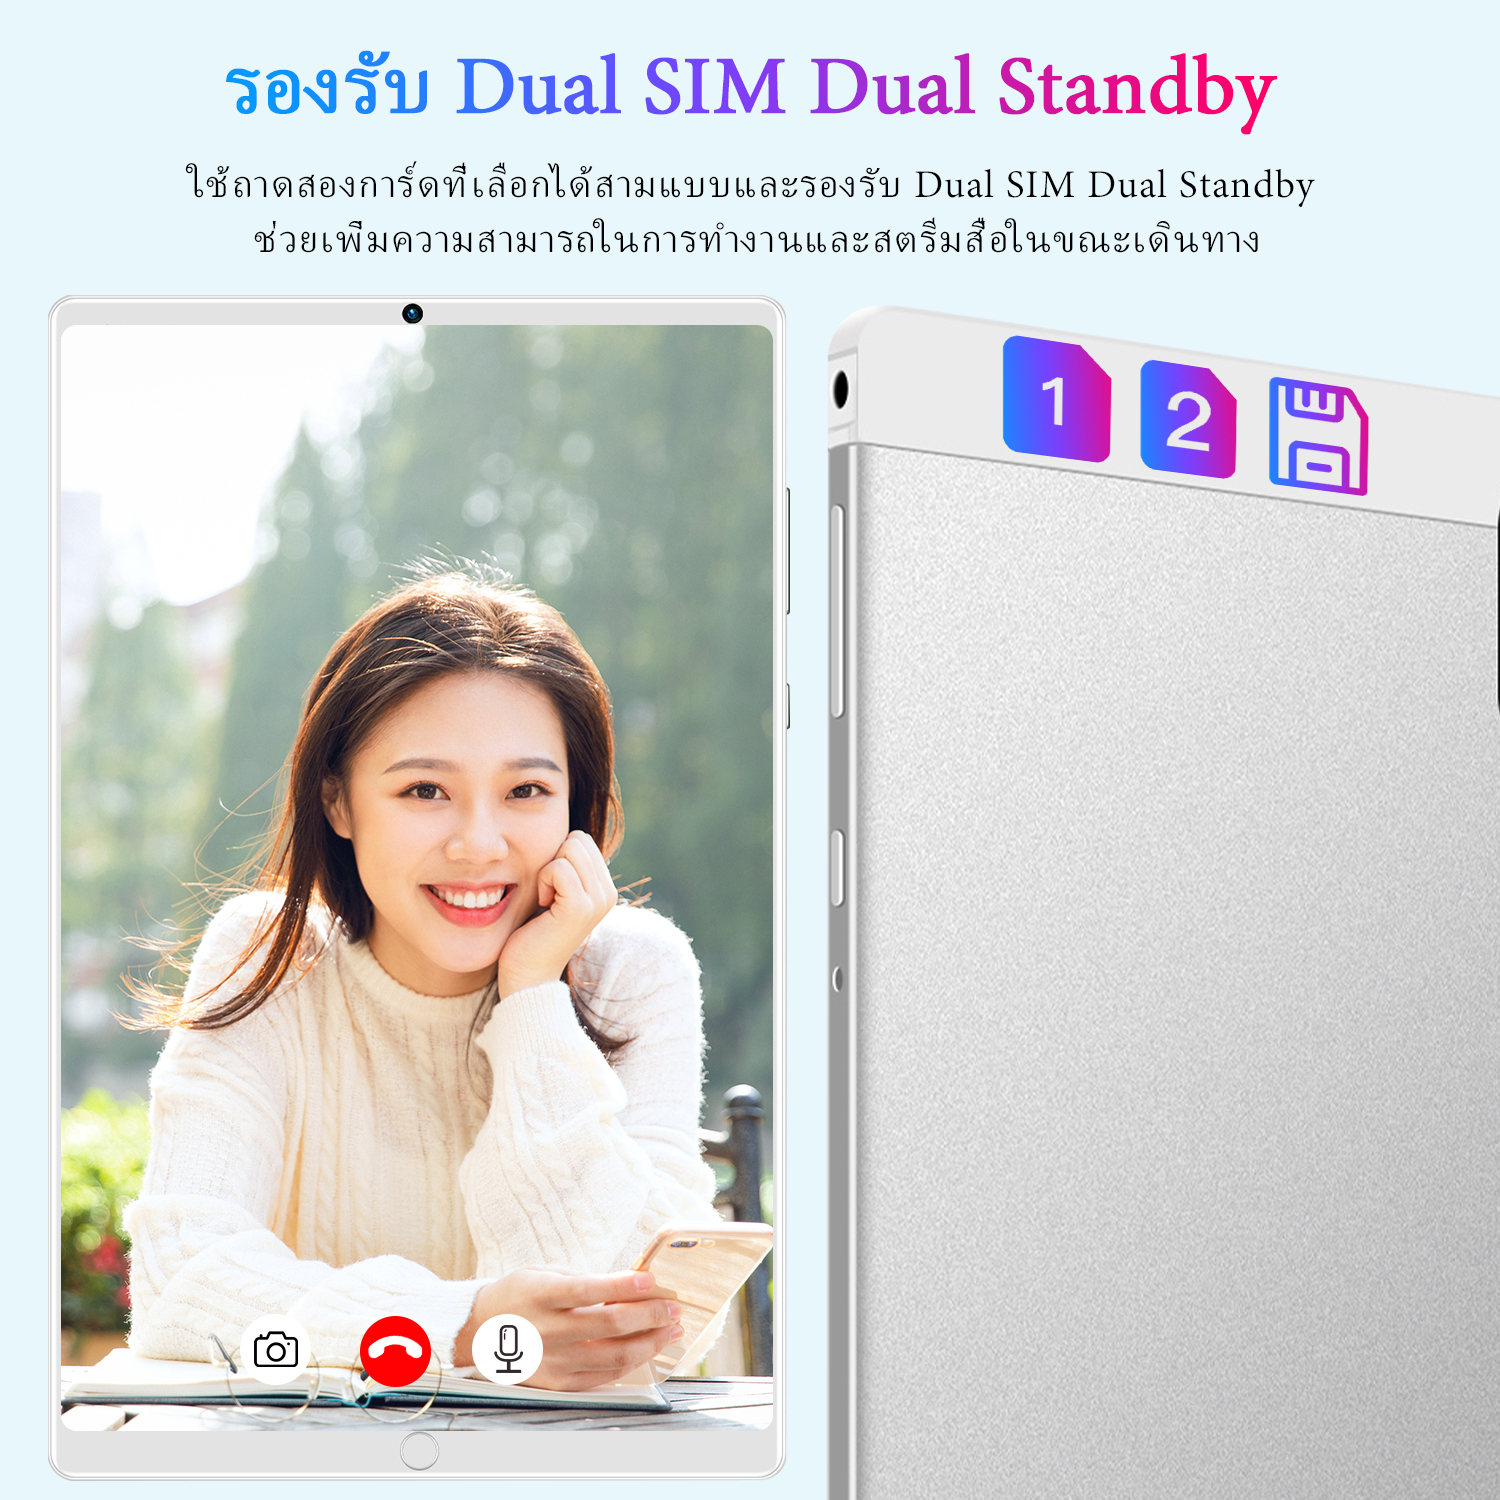 คำอธิบายเพิ่มเติมเกี่ยวกับ 【แป้นพิมพ์ฟรี】Sansumg Galaxy Tab แท็บเล็ต 10.4 นิ้ว RAM16G ROM512G แท็บเล็ตถูกๆ Screen Dual Sim โทรได้ Full HD แท็บแล็ตของแท้ Andorid11.0 Tablet 4g/5G 11-core เครื่องประมวลผล แท็บเล็ตสำหรับเล่นเกมราคาถูก จัดส่งฟรี รองรับภาษาไทย Tab S6 S7 S8 แทปเล็ตราคาถูก